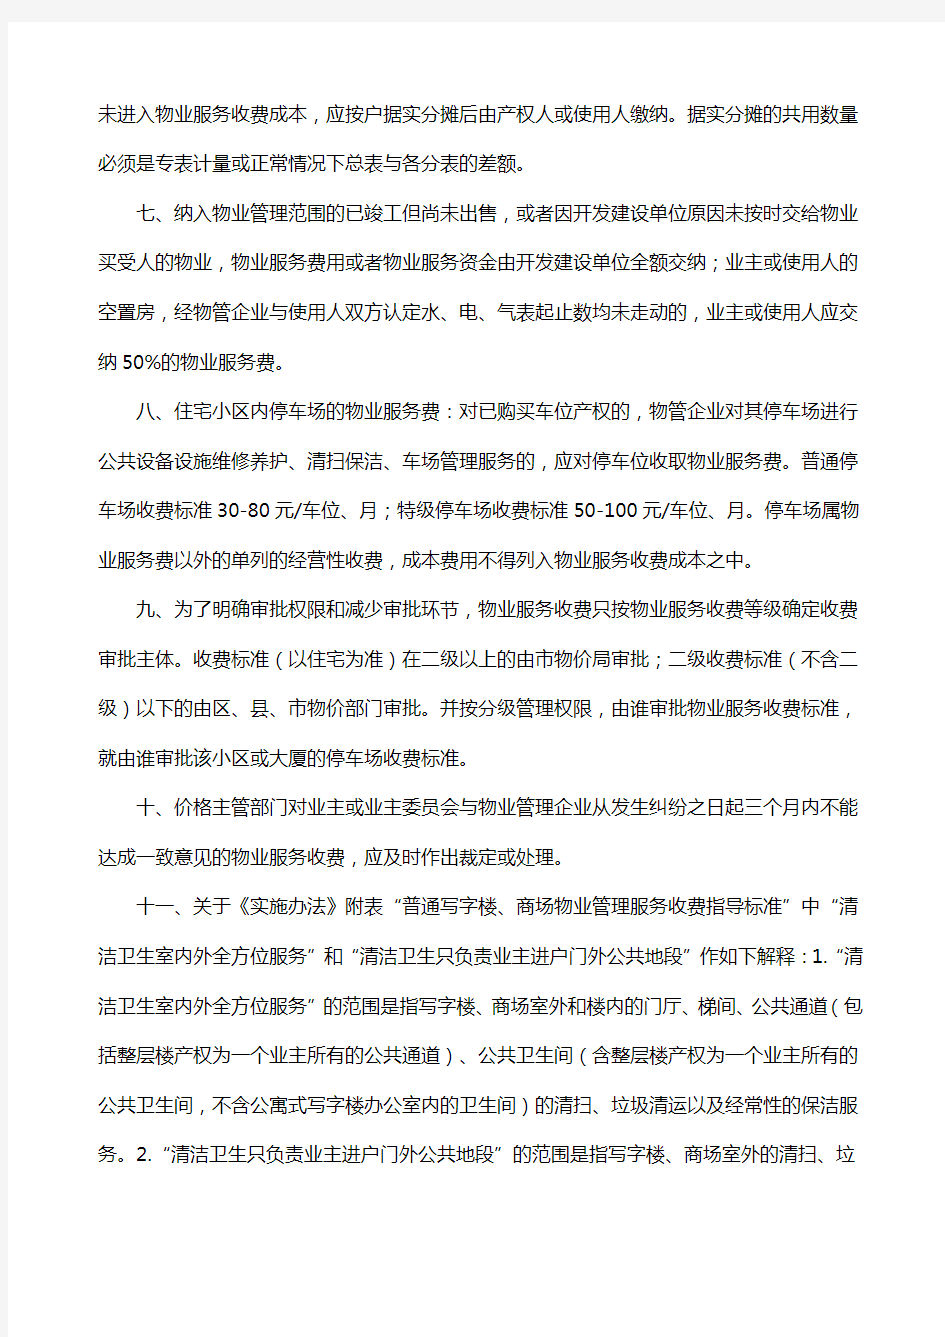 重庆市物价局关于对重庆市城市物业管理服务收费实施办法执行中有关问题的通知778号文件